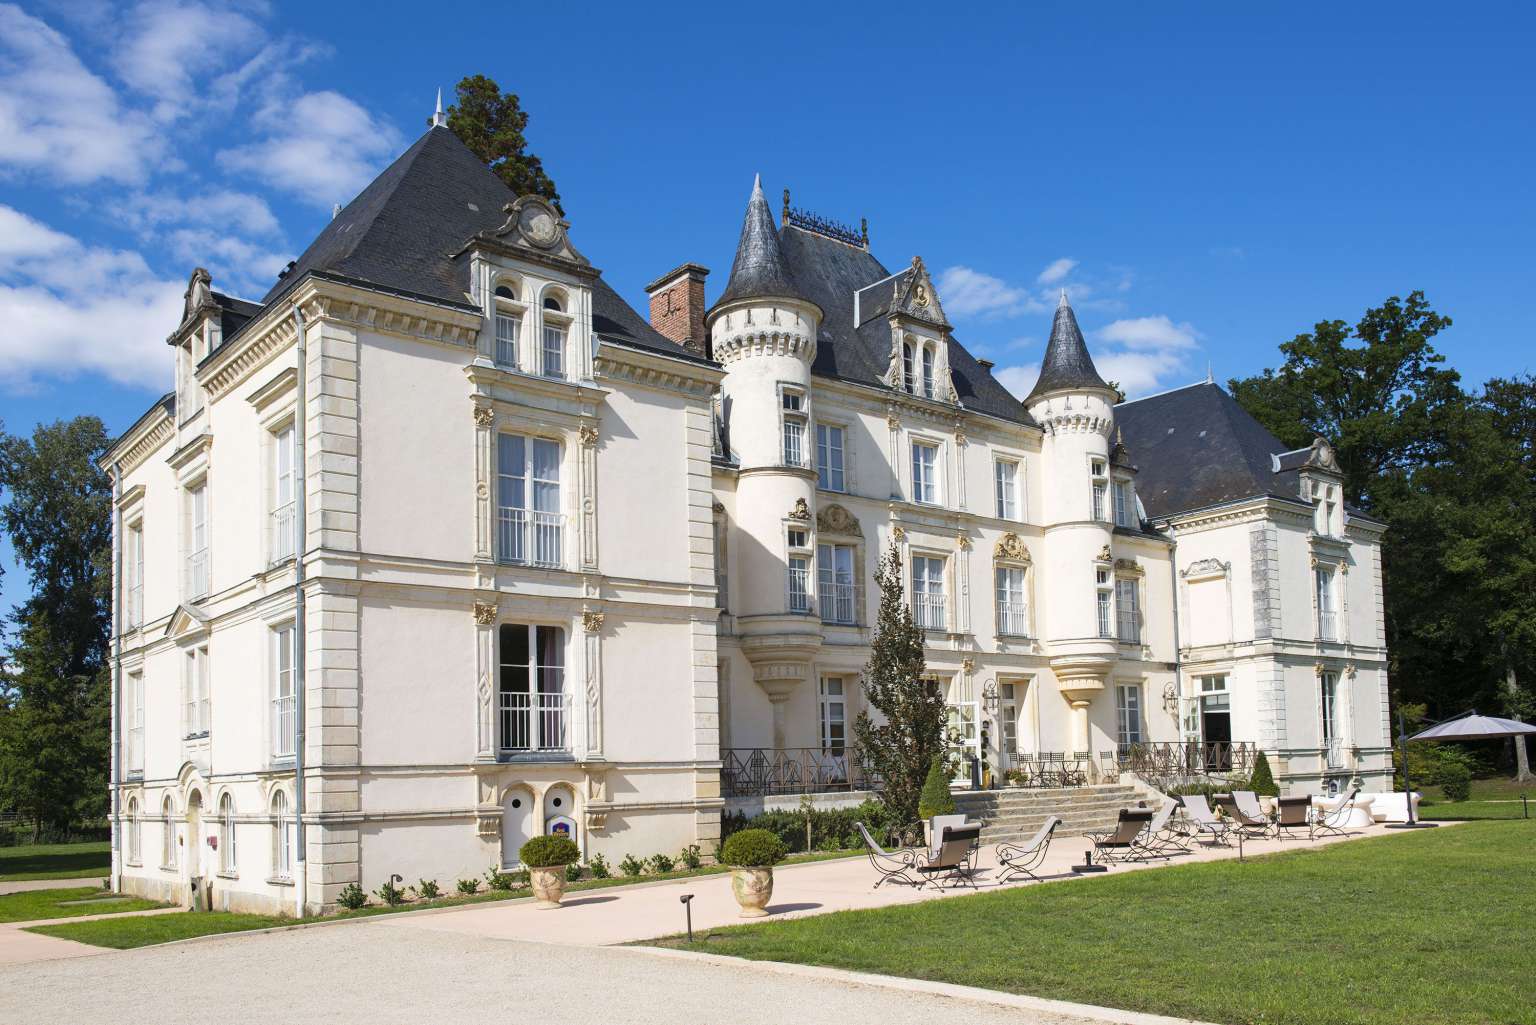 Yvré l'Evêque - Le château s'est transformé au cours des siècles - Il abrite désormais un hôtel de luxe (Source Internet, www.lemans-countryclub.com)